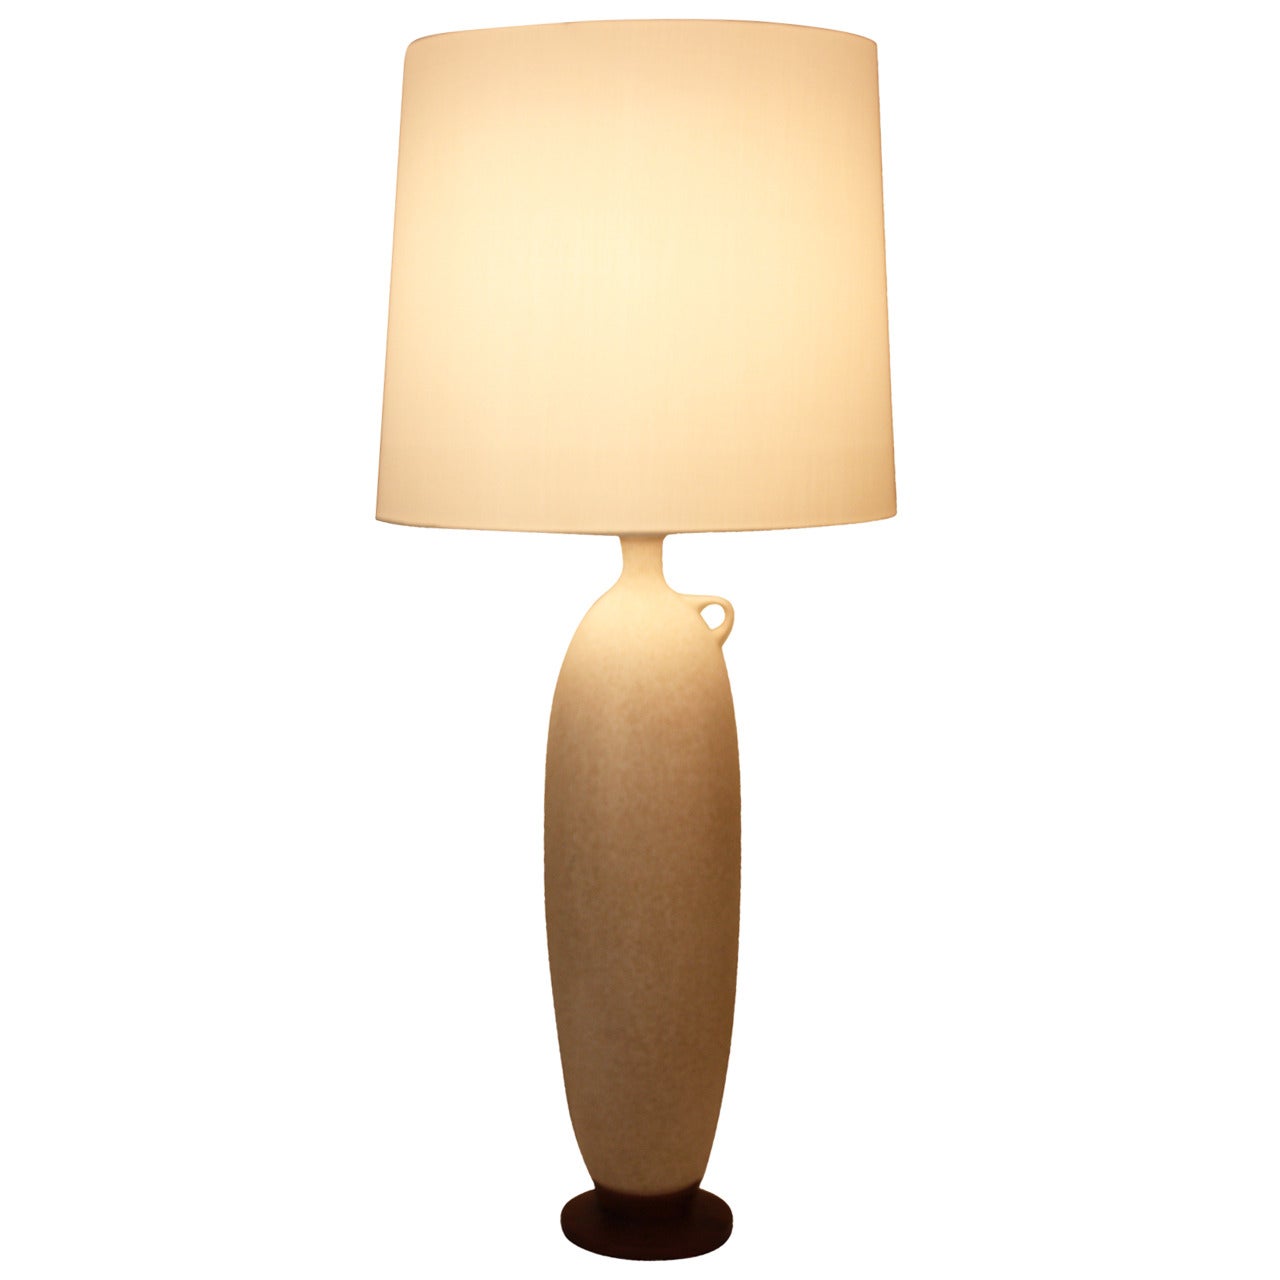 Italian Mid-Century Table Lamp